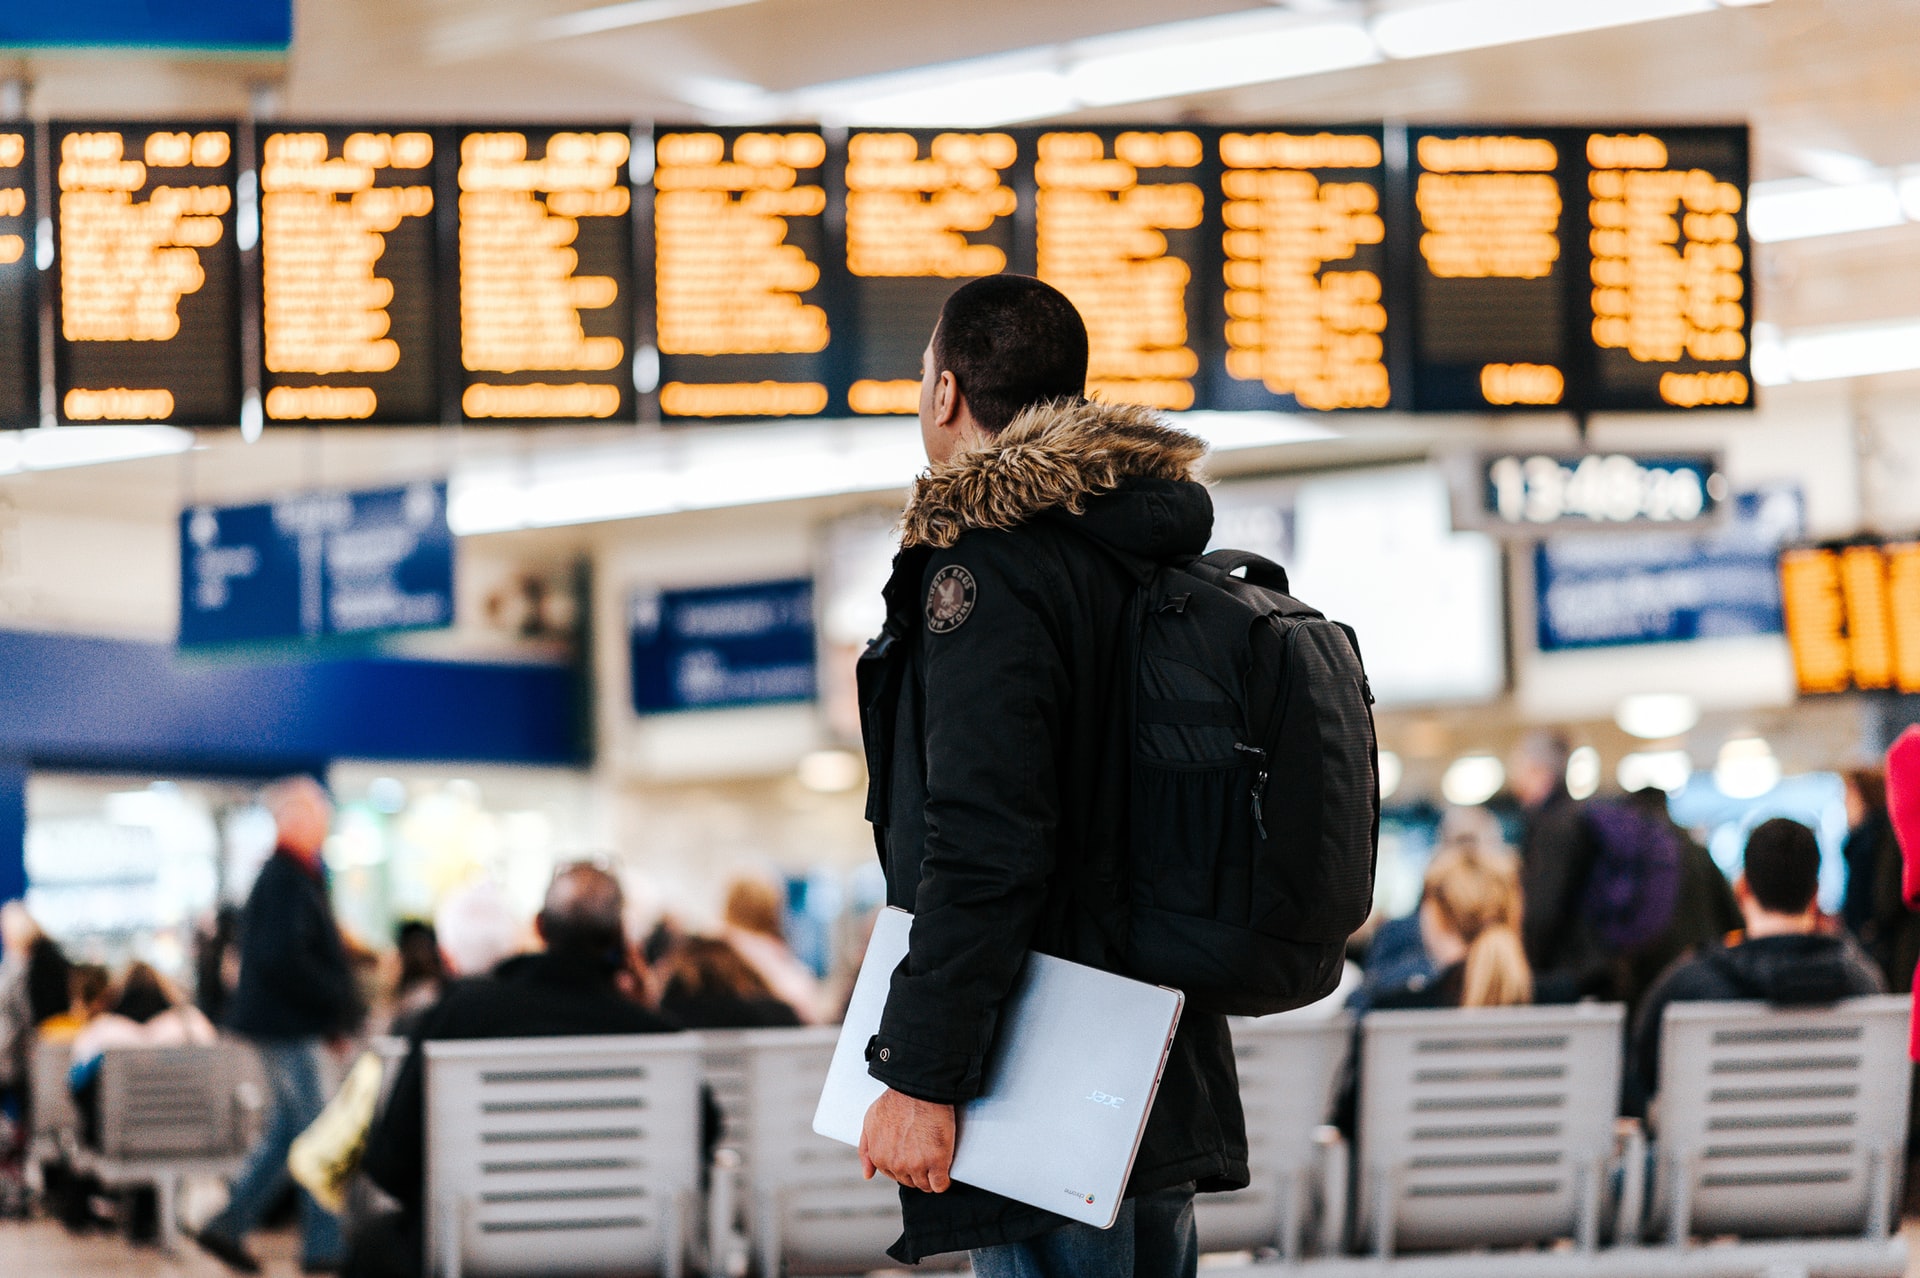 Heathrow Airport Departures